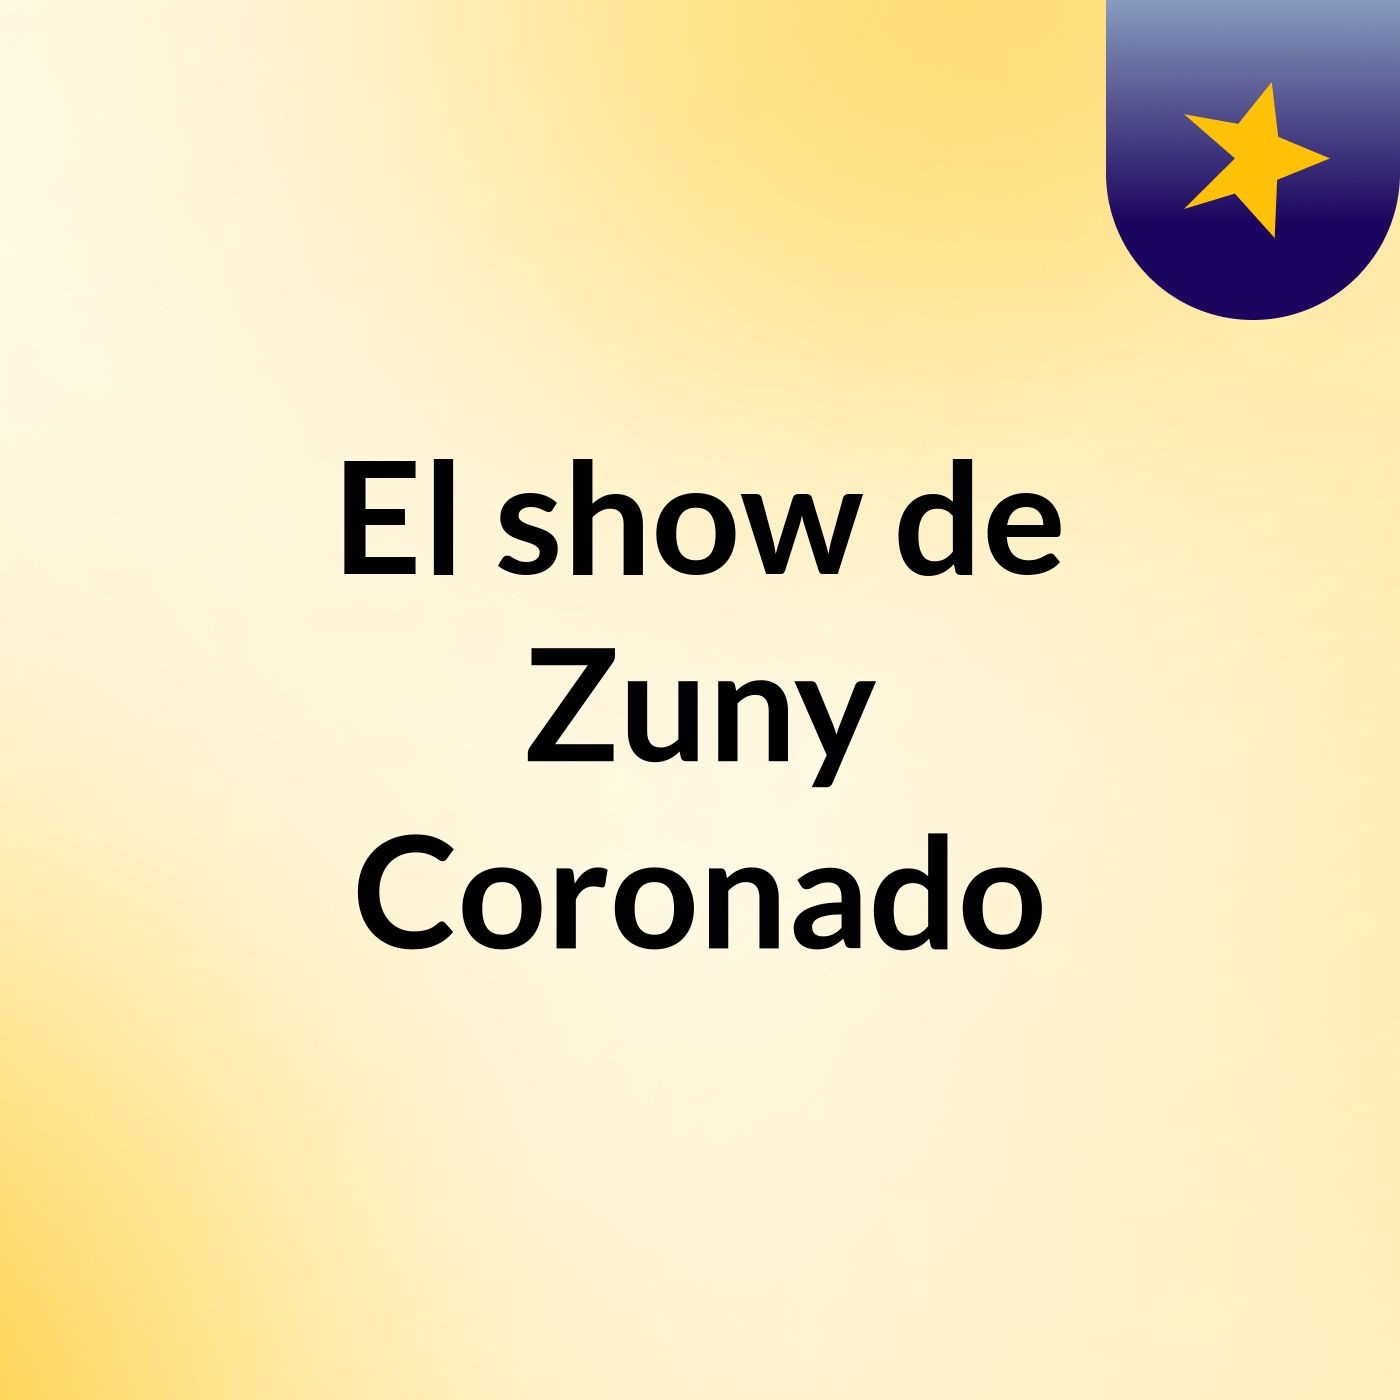 El show de Zuny Coronado